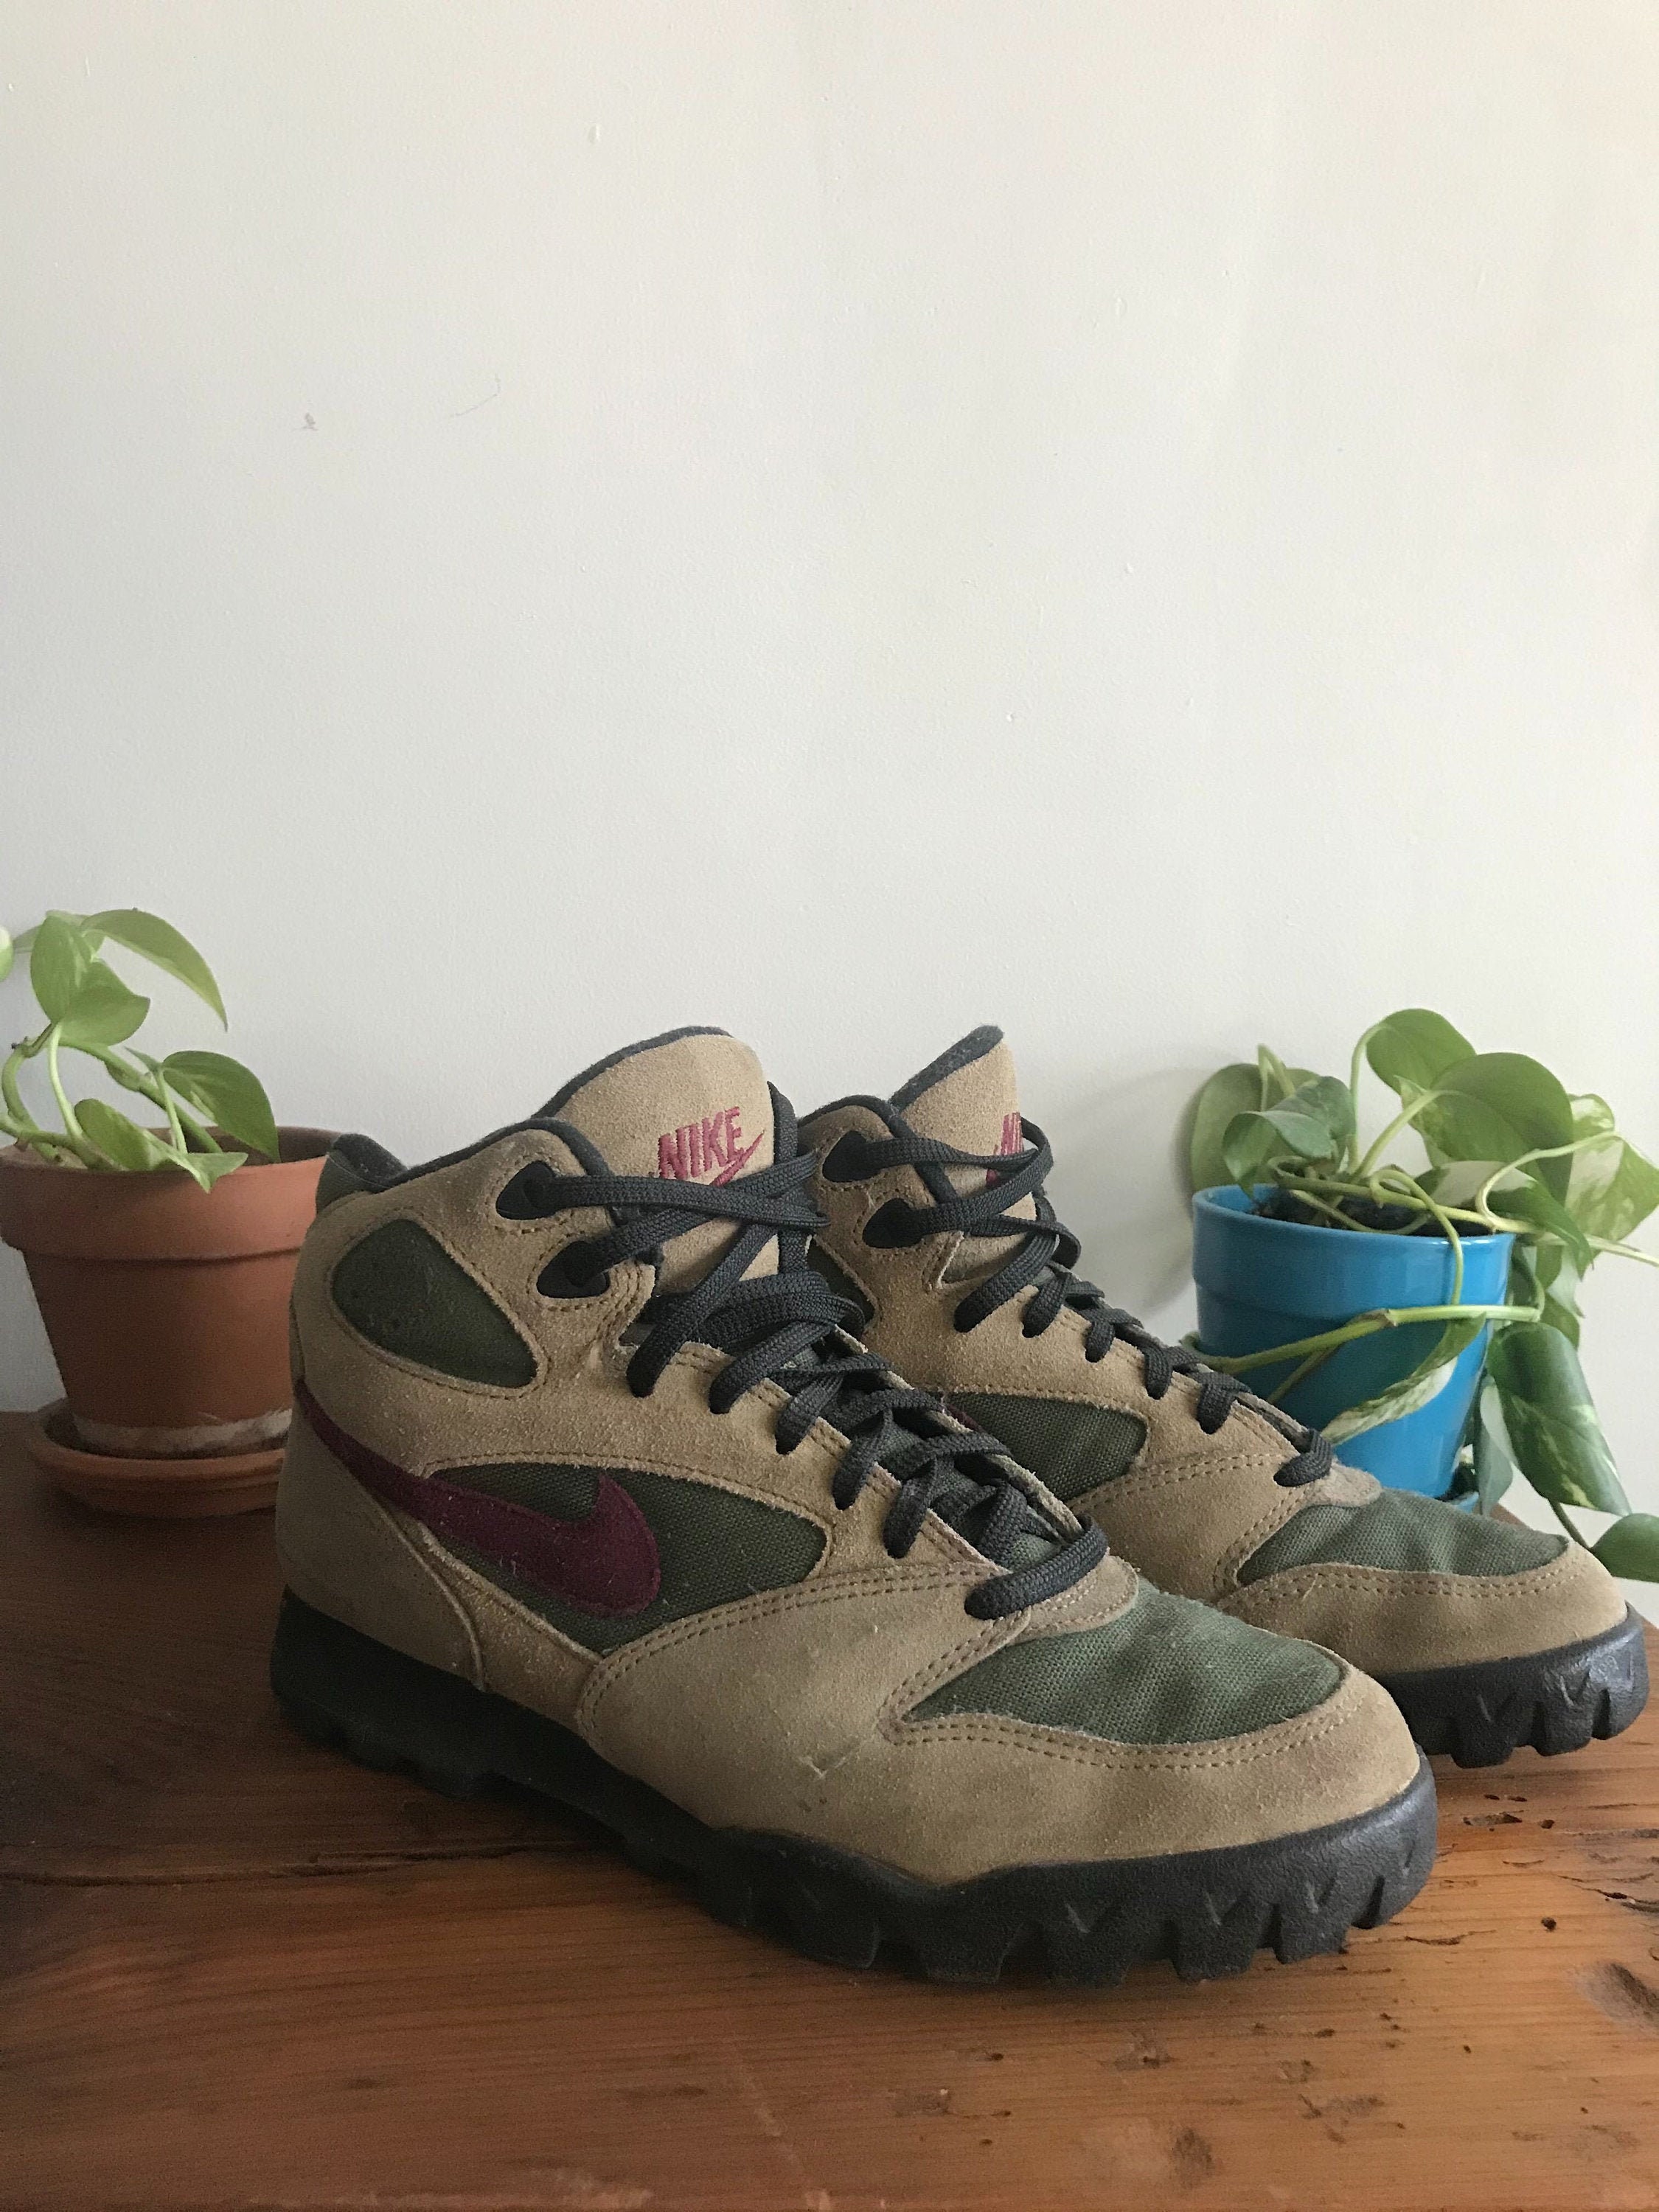 ナイキ Vintage 90s Caldera Hiking Boots